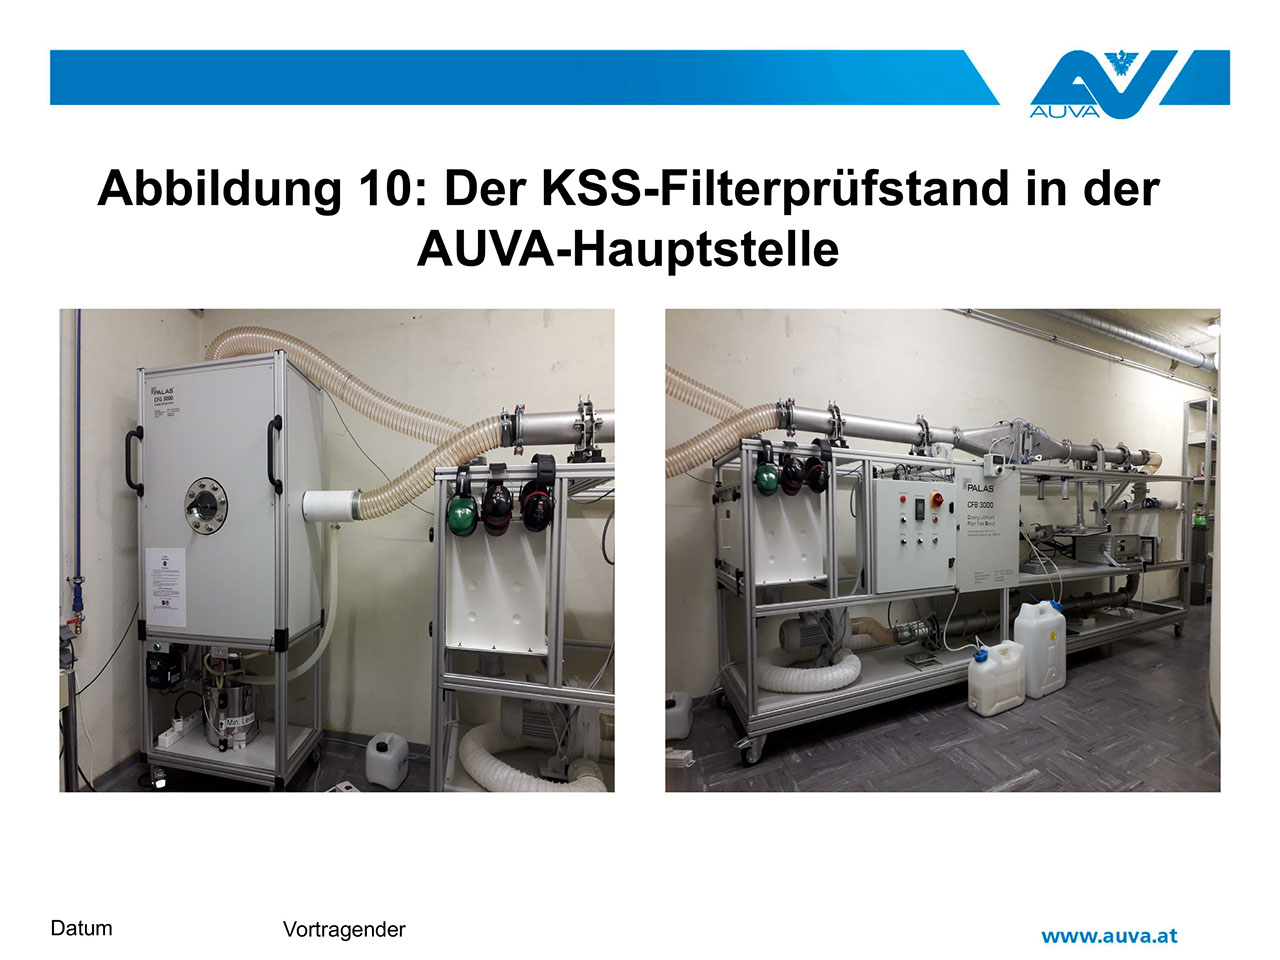 Abbildung 10: Der KSS-Filterprüfstand in der AUVA-Hauptstelle